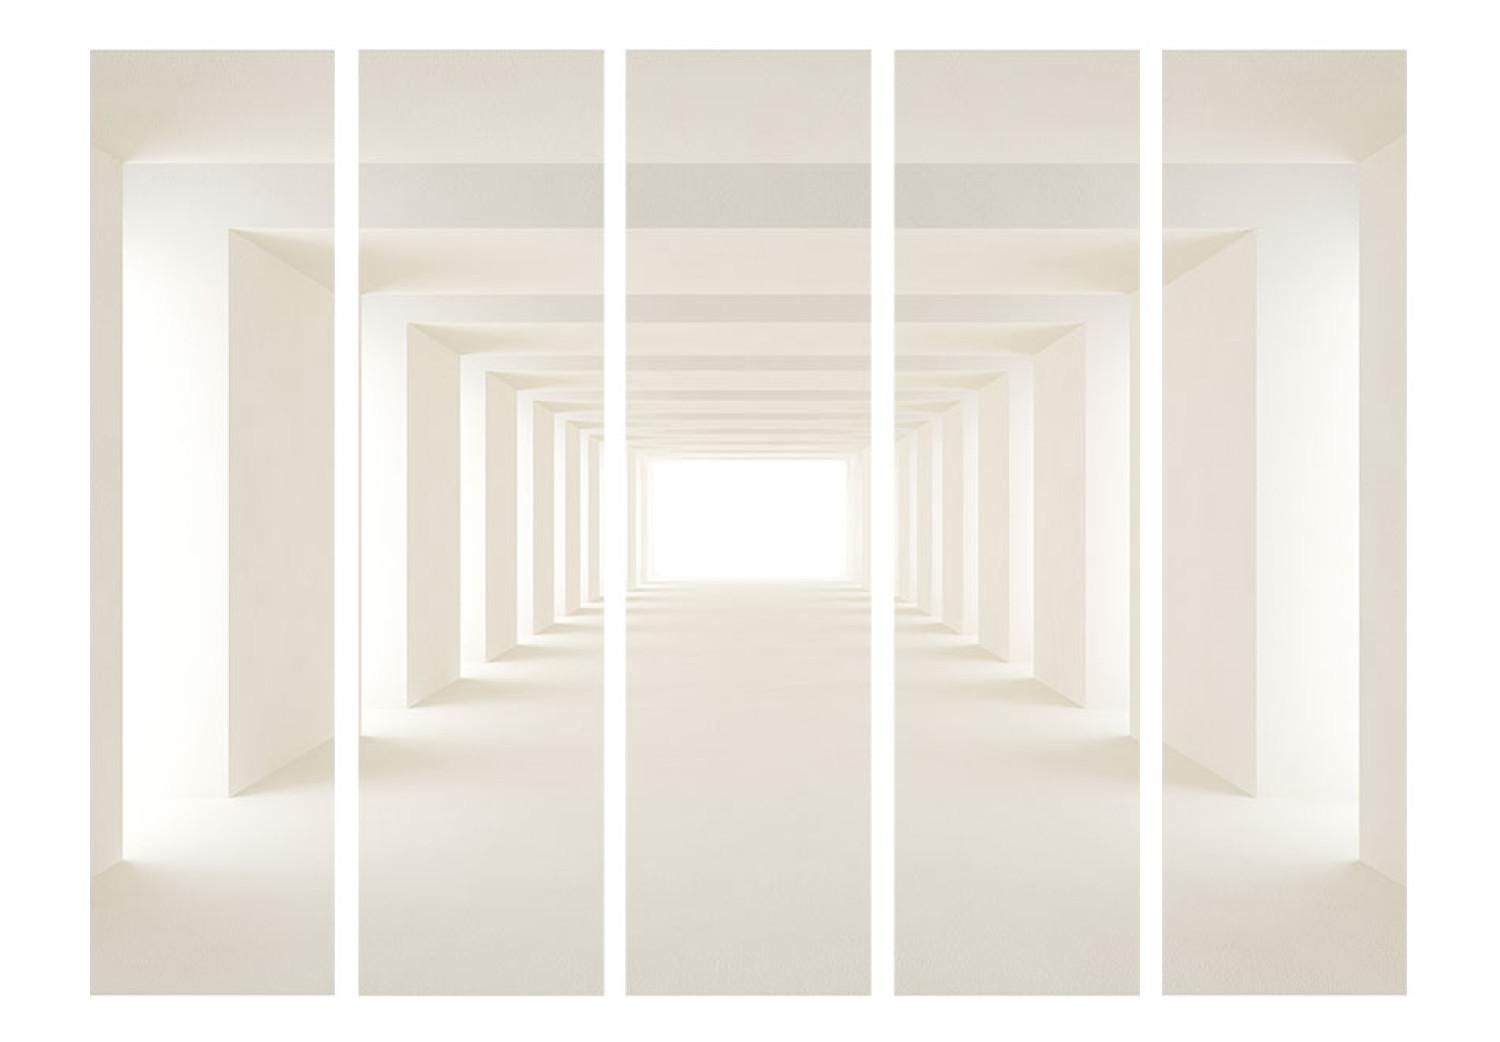 Biombo decorativo Hacia la luz II - pasillo abstracto en ilusión espacial 3D